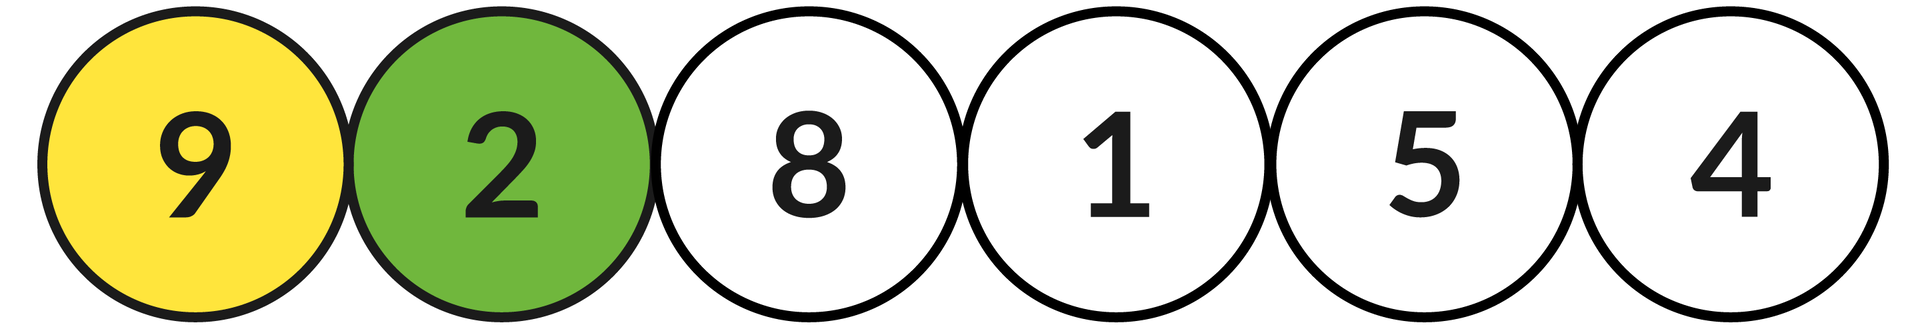 Ilustracja przedstawia sześć okręgów z liczbami: 9, 2, 8, 1, 5, 4.  Zielonym kolorem zaznaczono okrąg z liczbą: 2, a kolorem żółtym z liczbą: 9.